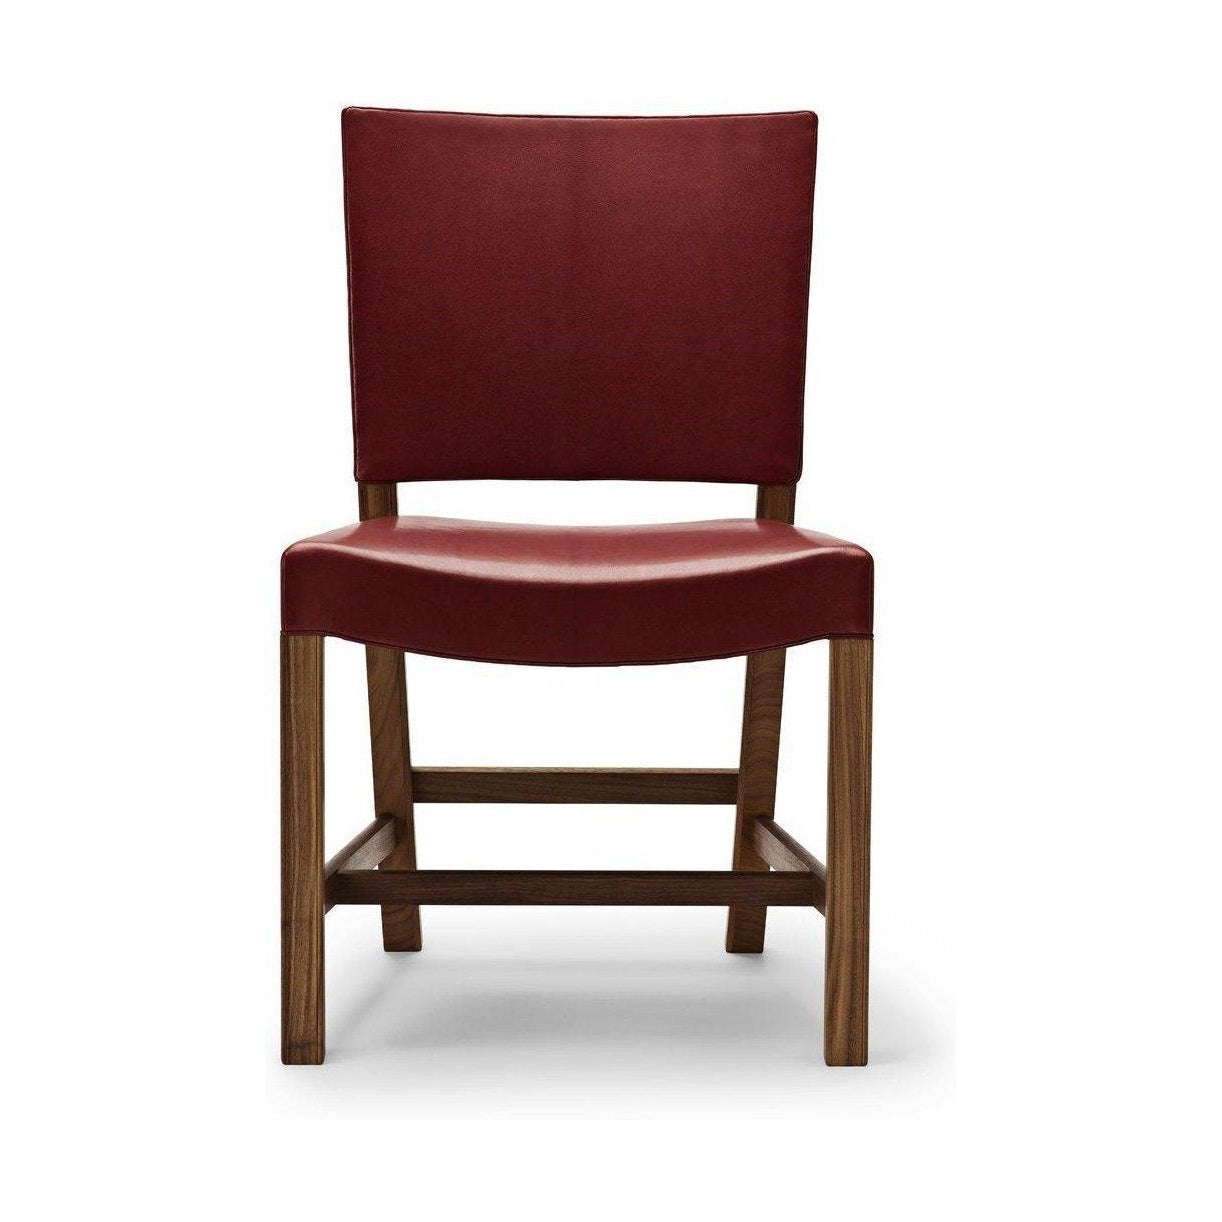 Carl Hansen KK47510 La sedia rossa, pelle di capre in noce/rossa laccata